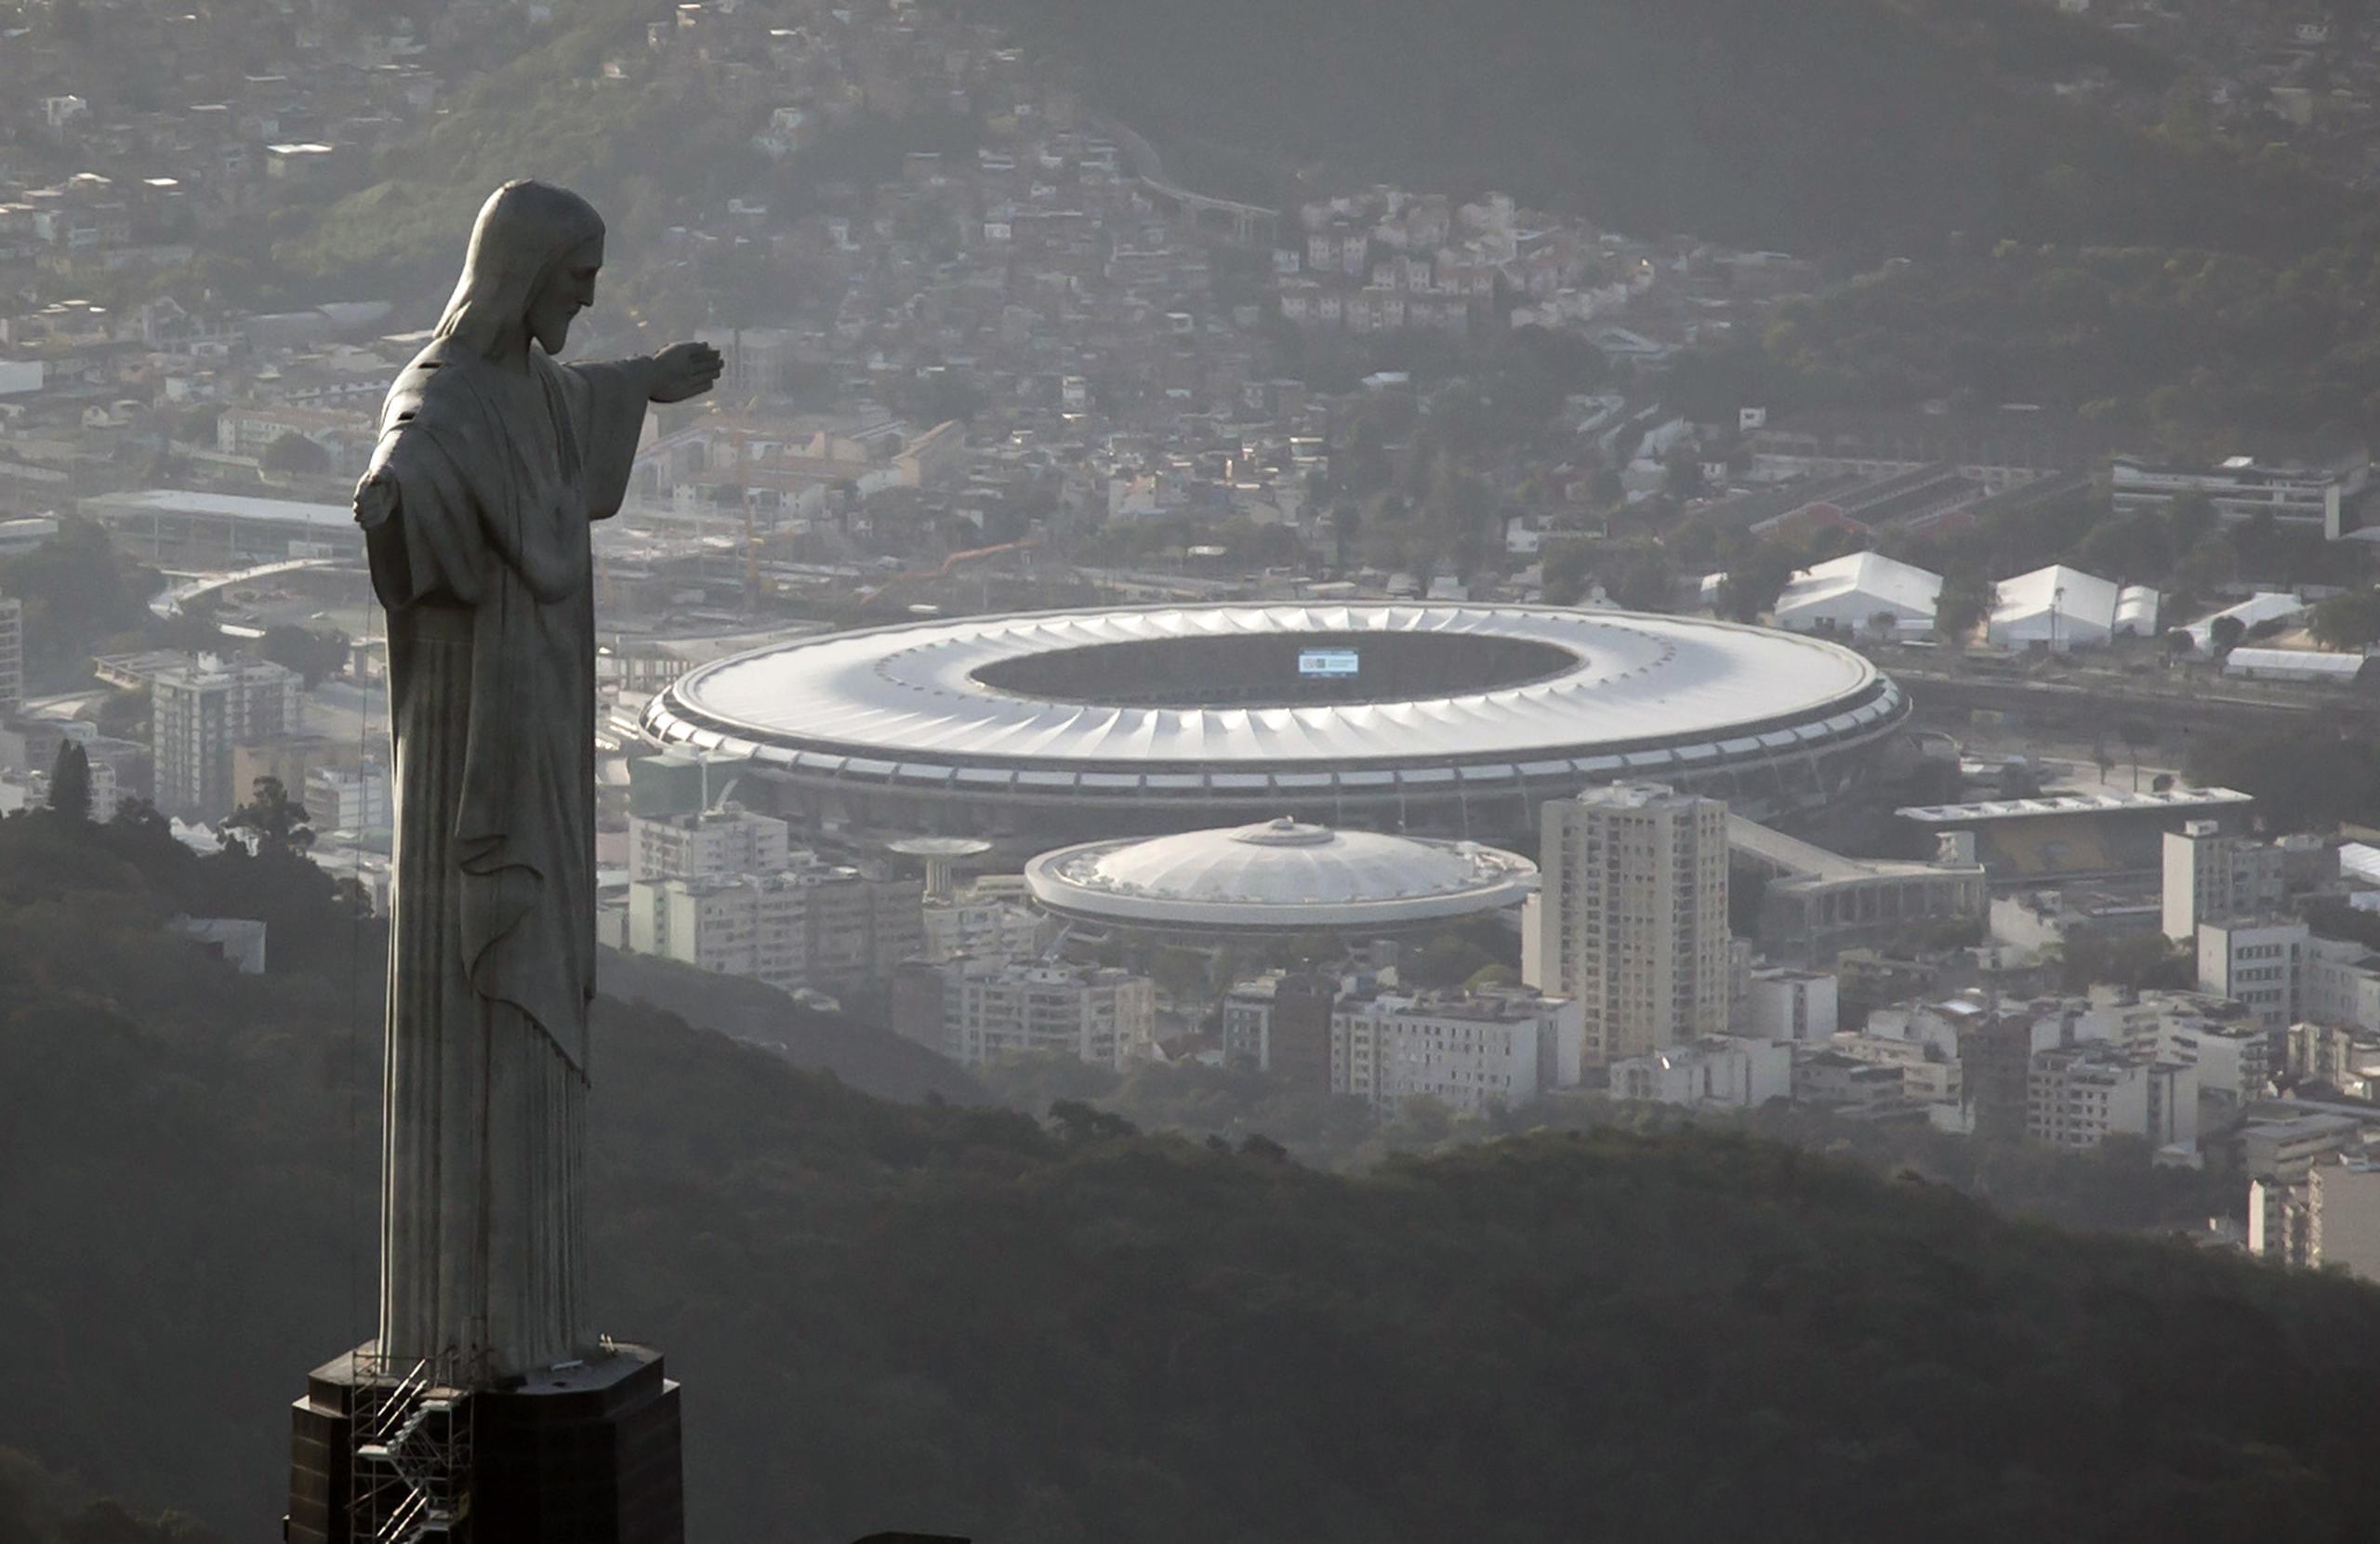 El Estadio de Maracaná, aquí detrás de la estatua de Cristo Redentor en Río de Janeiro, tendrá un 10% de aforo para la final del sábado.